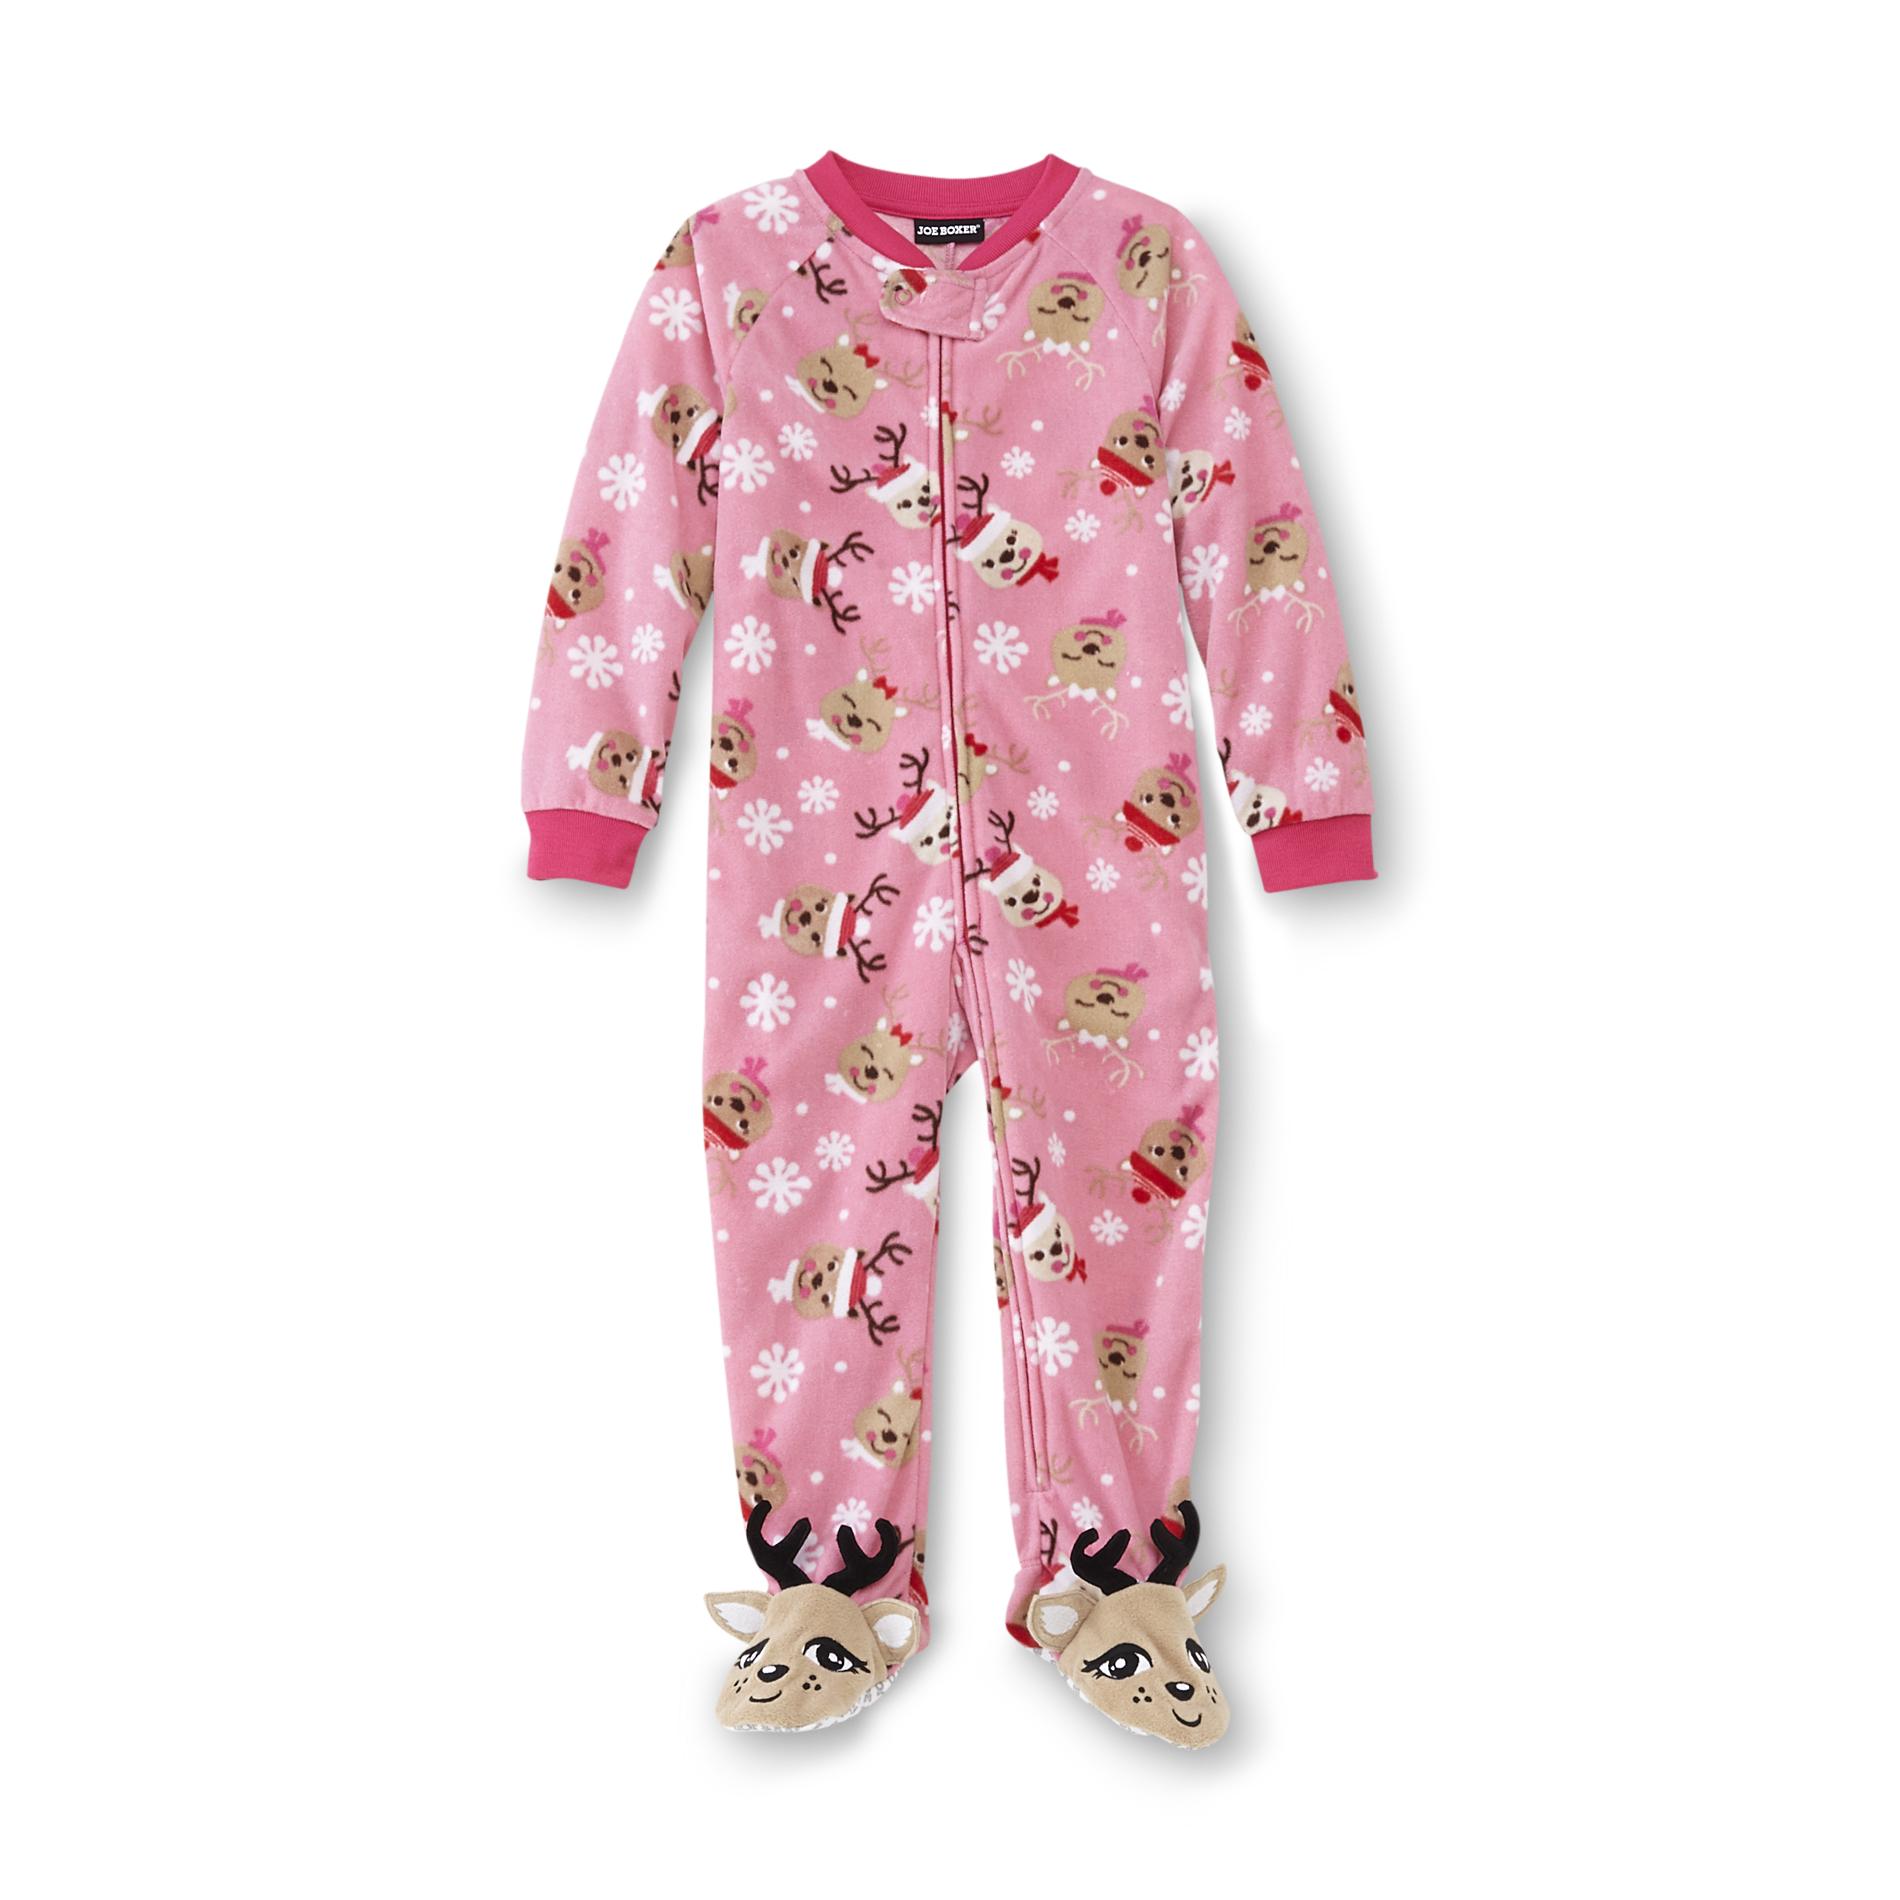 Joe Boxer Infant & Toddler Girl's Footed Blanket Sleeper Pajamas - Reindeer